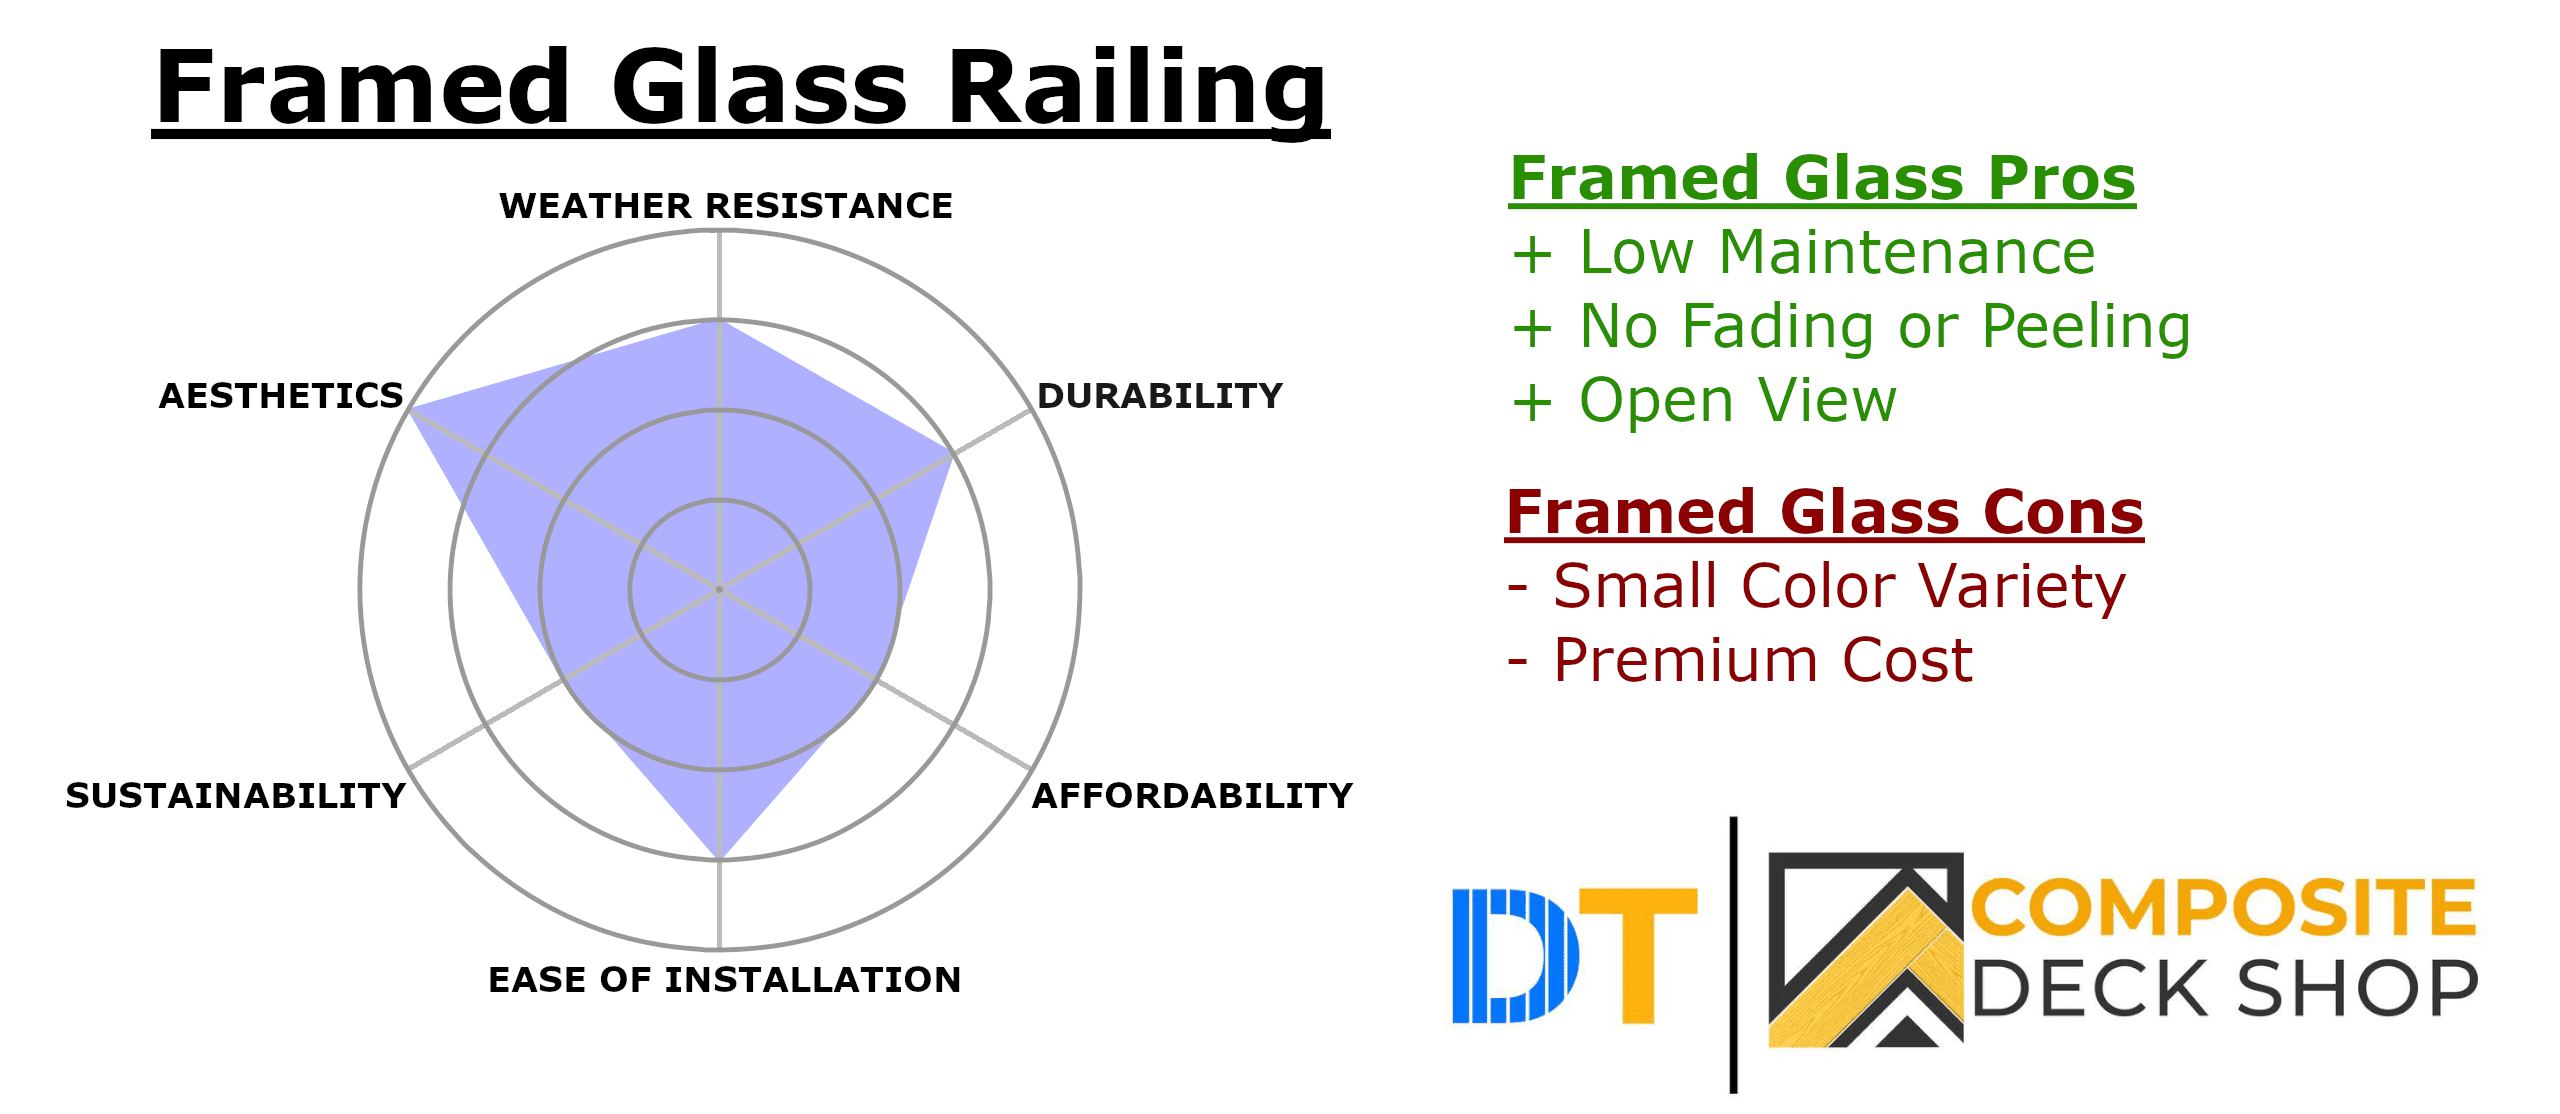 Framed Glass Railing